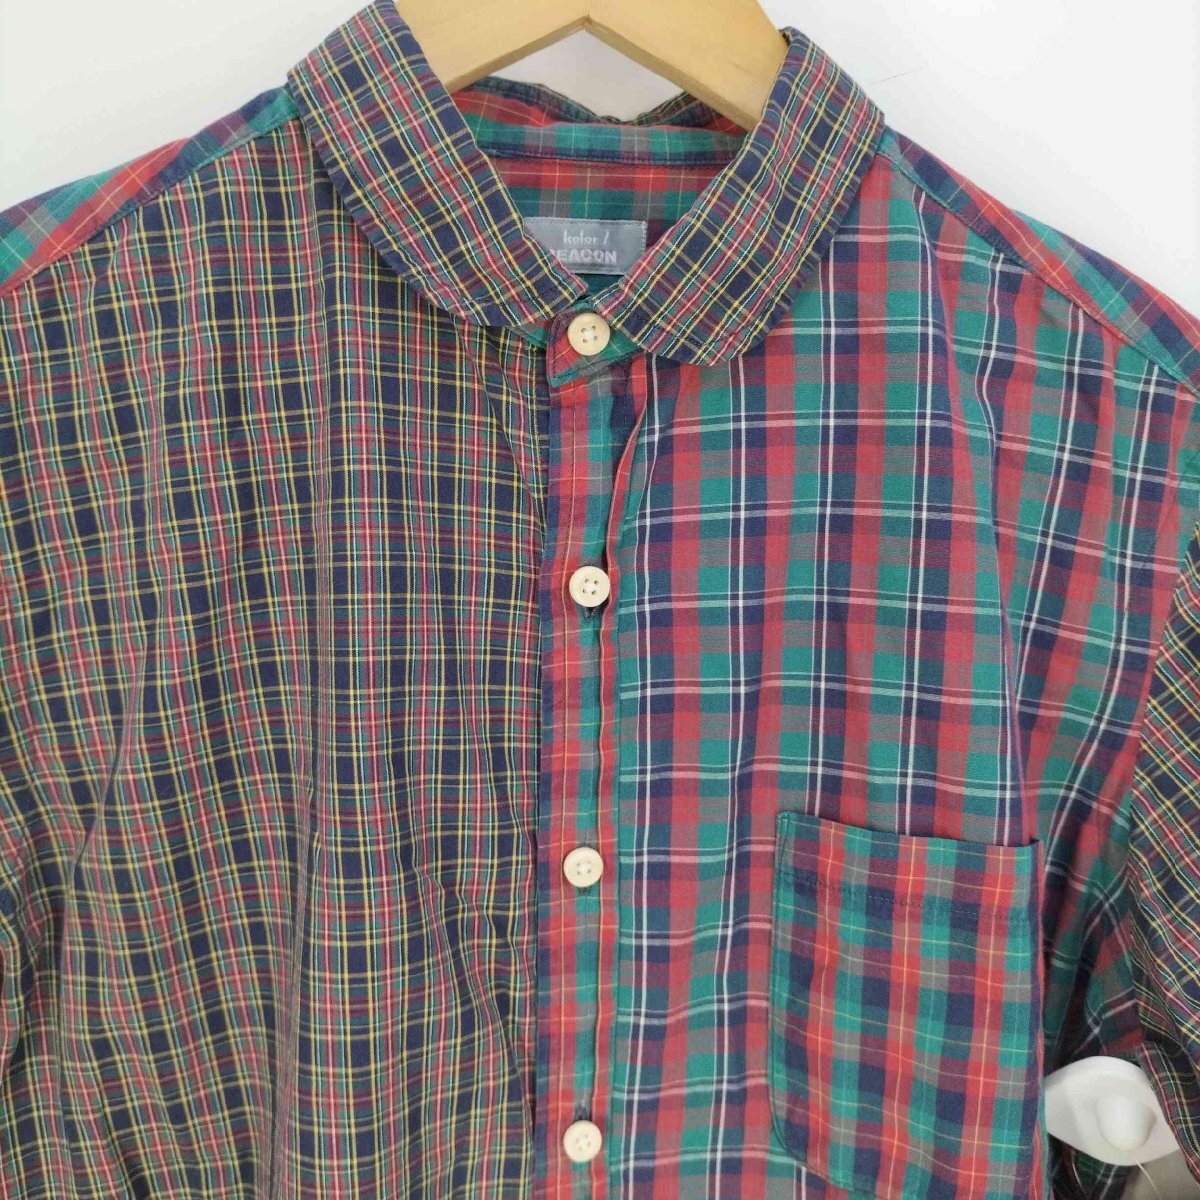 kolor BEACON(カラー ビーコン) クレイジーパターン 丸襟 チェックシャツ メンズ 表記無 中古 古着 1009の画像3